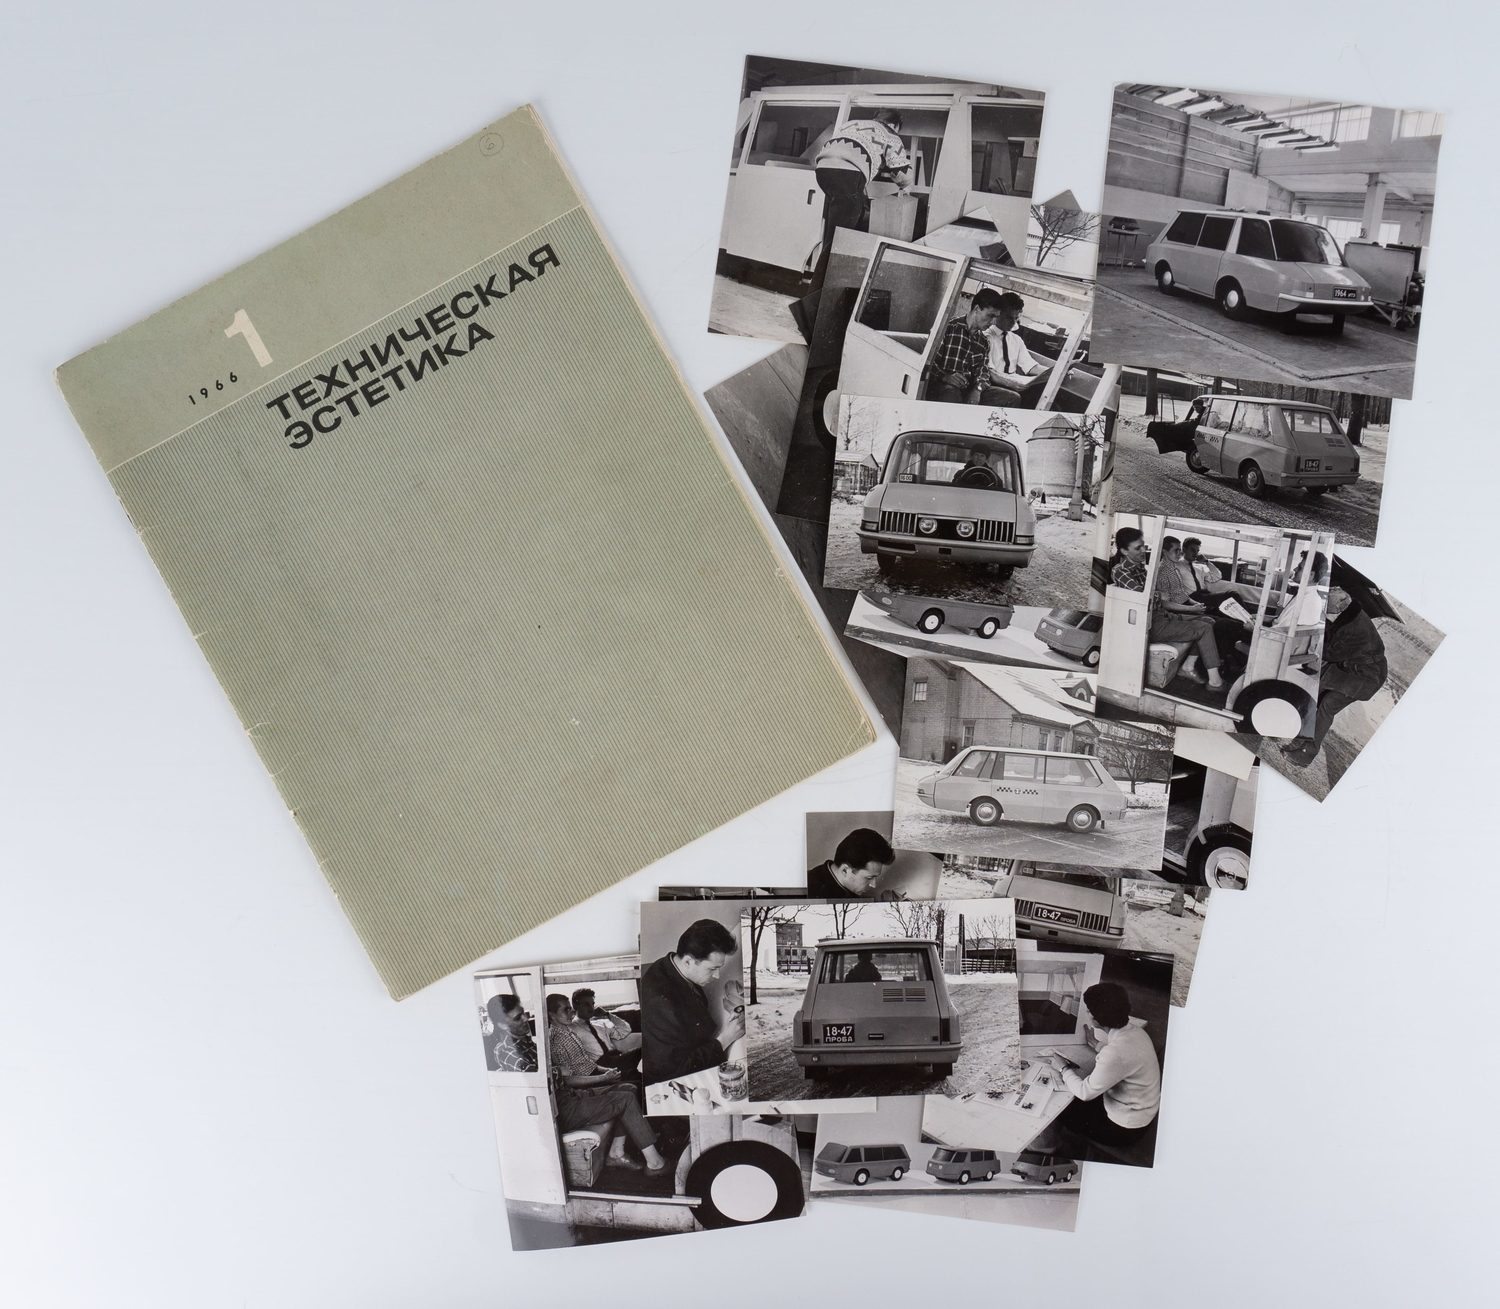 25 фотографий разработки и опытного образца такси ВНИИТЭ. 1960-е годы. Журнал «Техническая эстетика» (1966. №1) со статьёй о такси ВНИИТЭ.